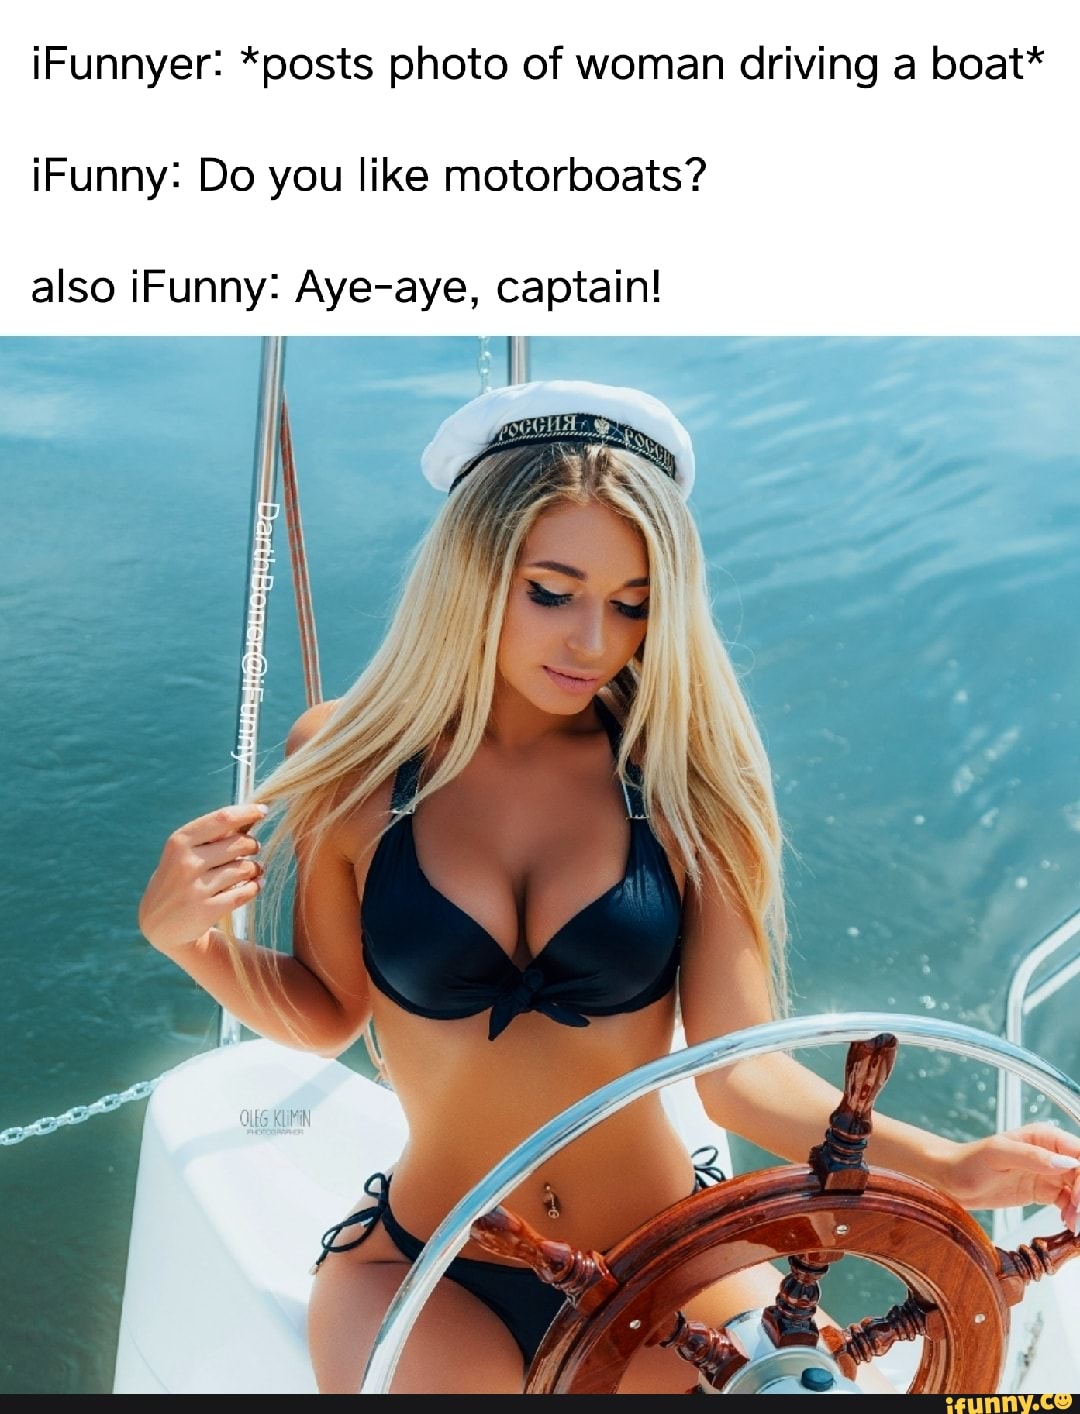 funny motorboating meme